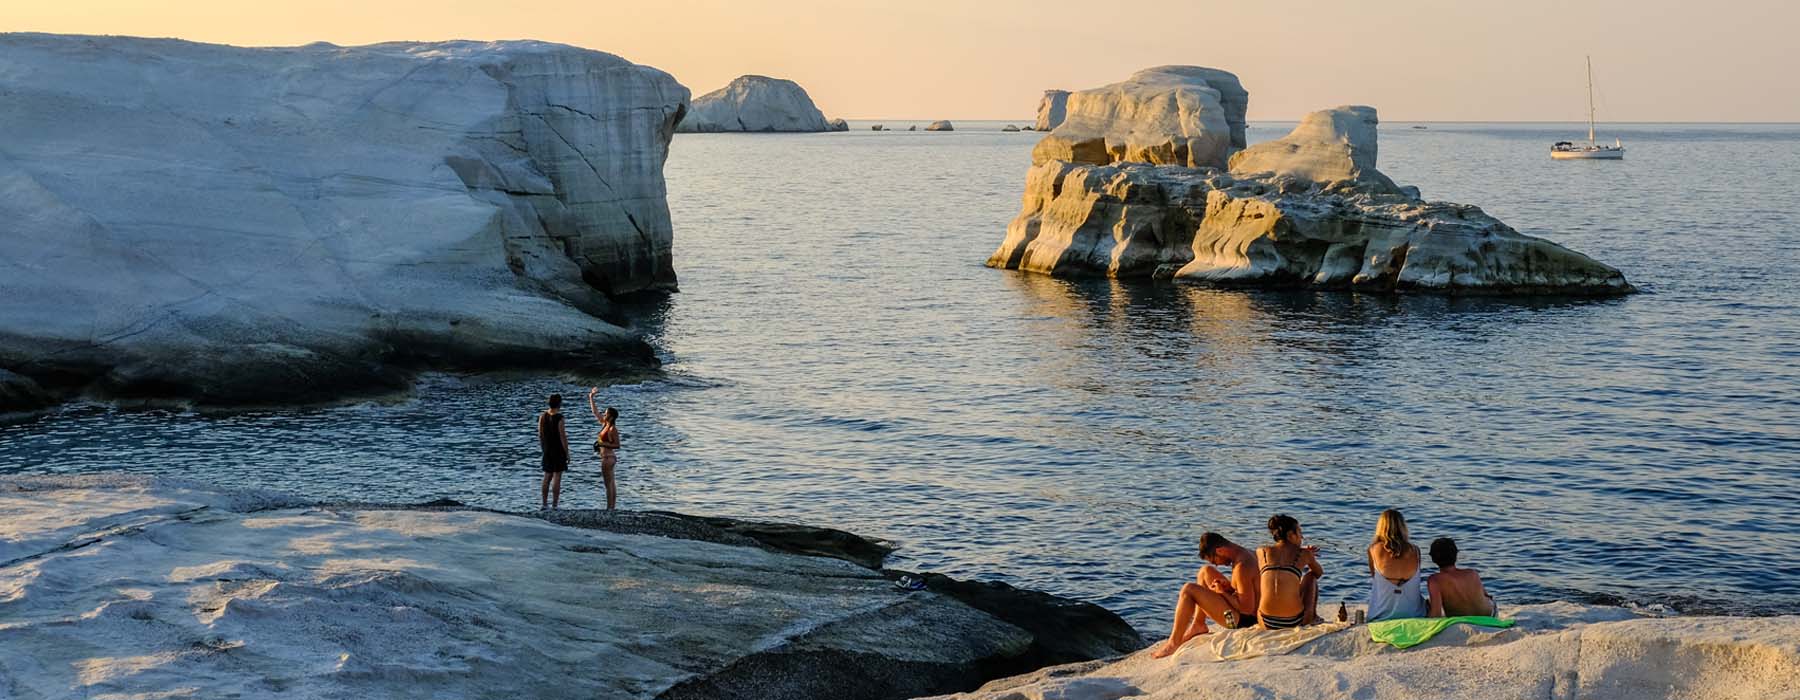 Greece<br class="hidden-md hidden-lg" /> Summer Holidays